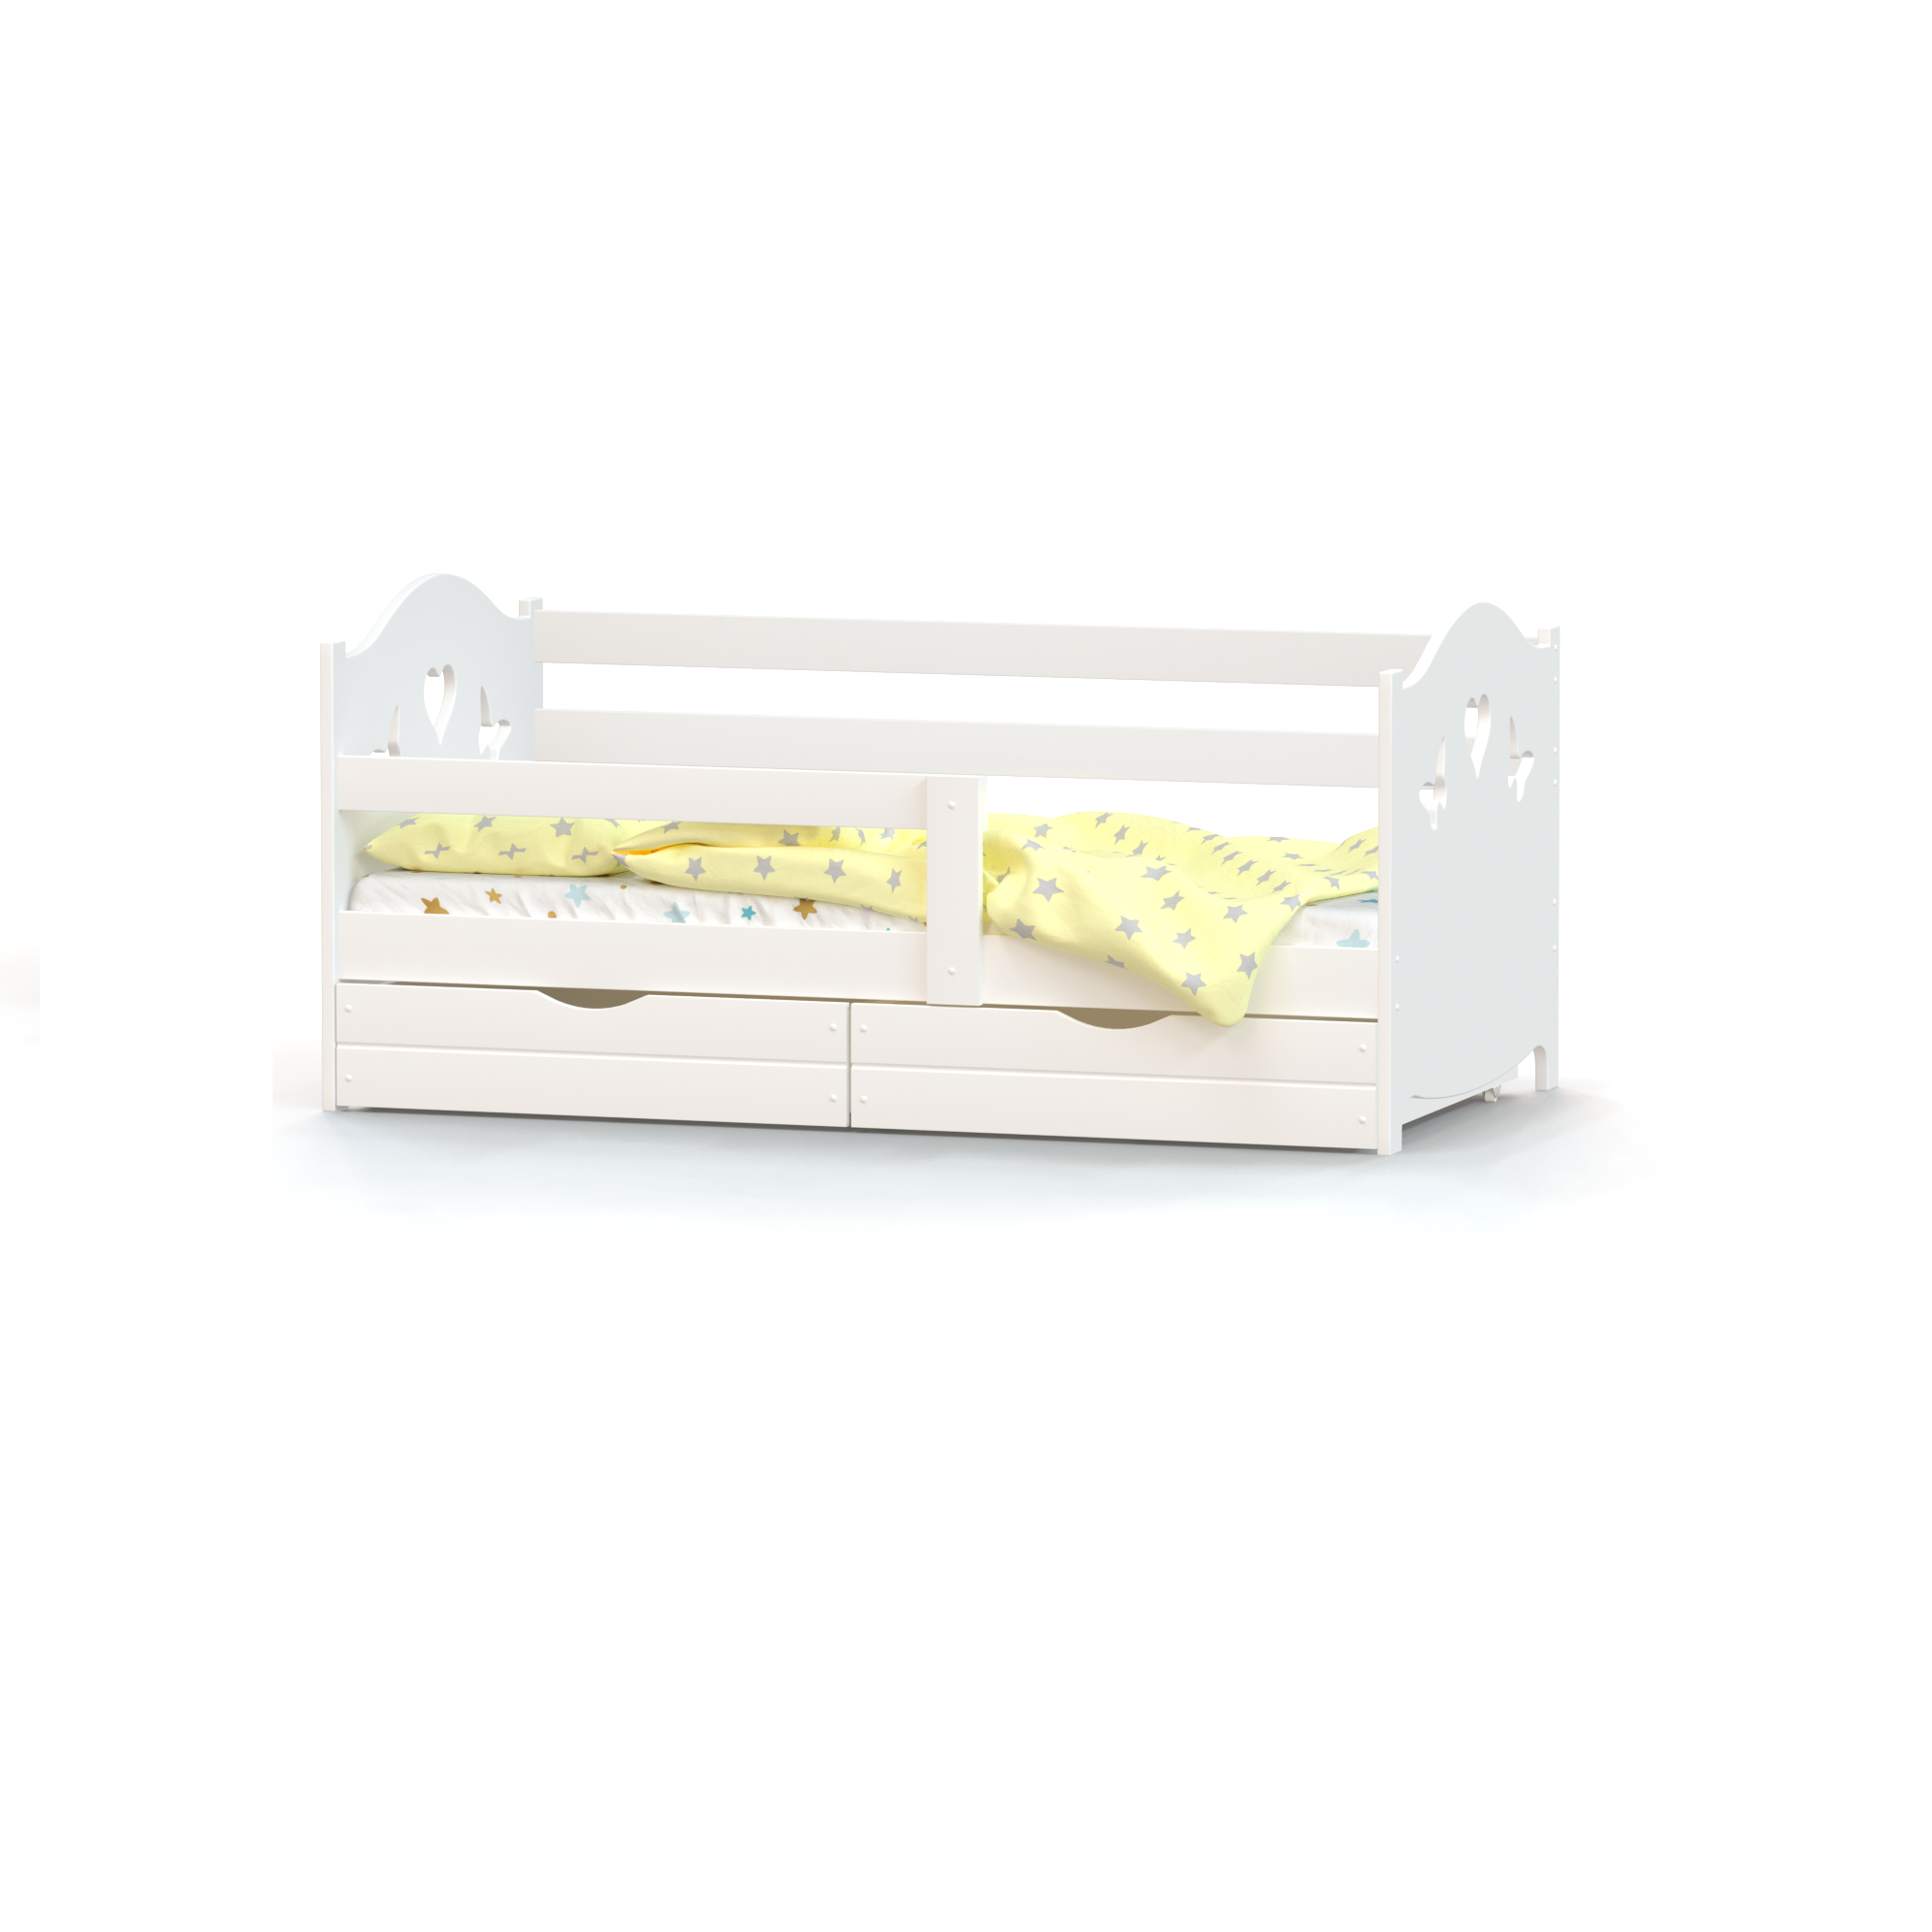 Кровать детская односпальная Roomiroom односпальная 160х80 с ящиками белая - фото 1